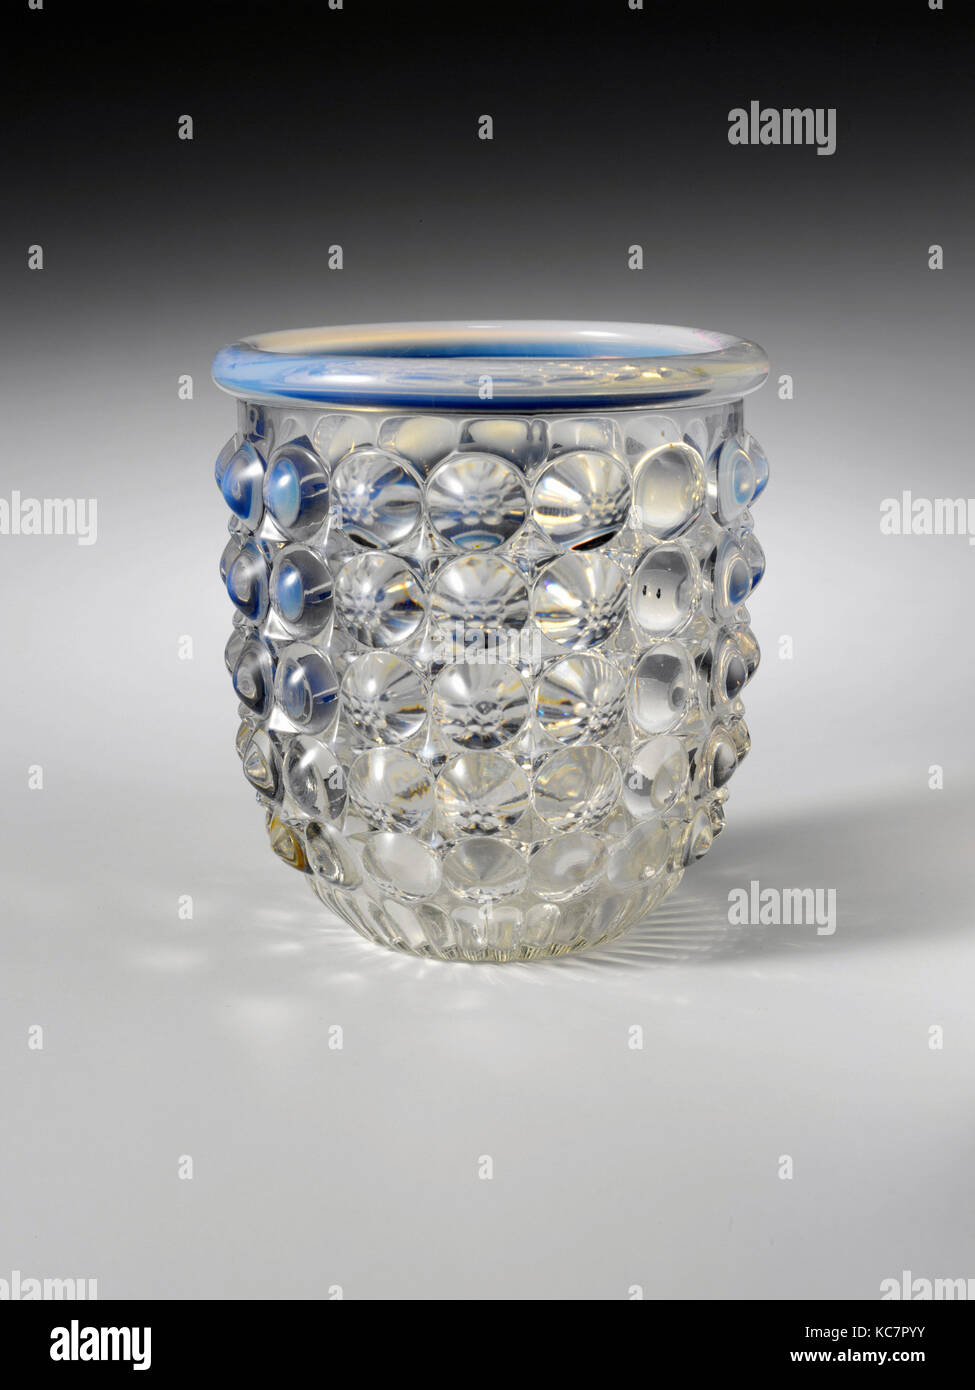 Flint glass immagini e fotografie stock ad alta risoluzione - Alamy